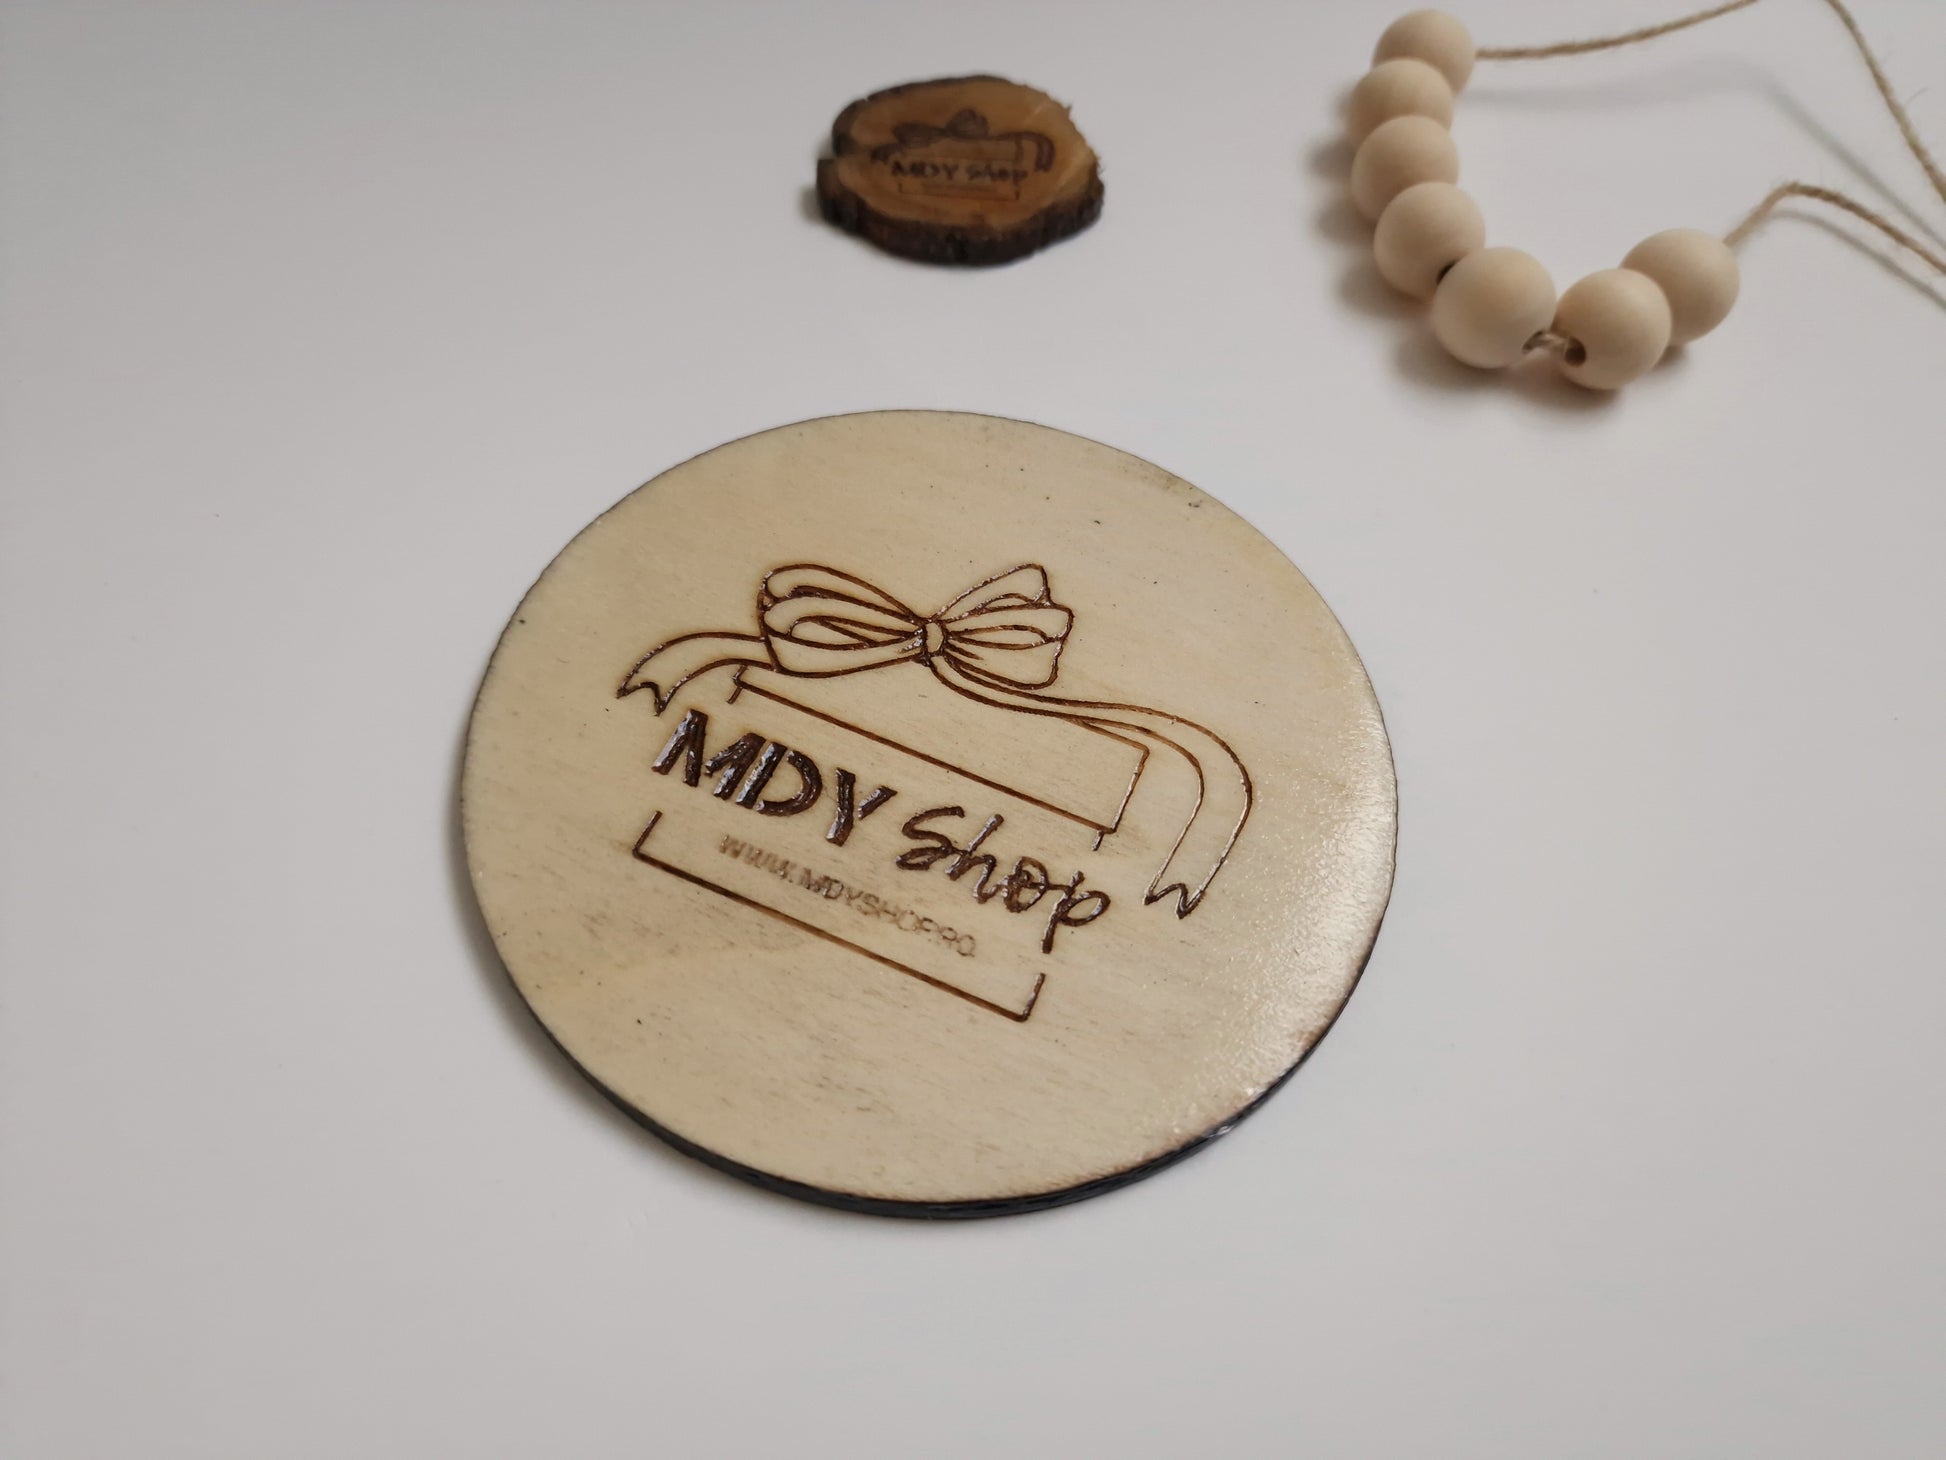 Suport pentru cana sau pahar (coasters) realizat din lemn. Acesta se poate personaliza cu logo-ul companiei, un mesaj text sau o imagine.